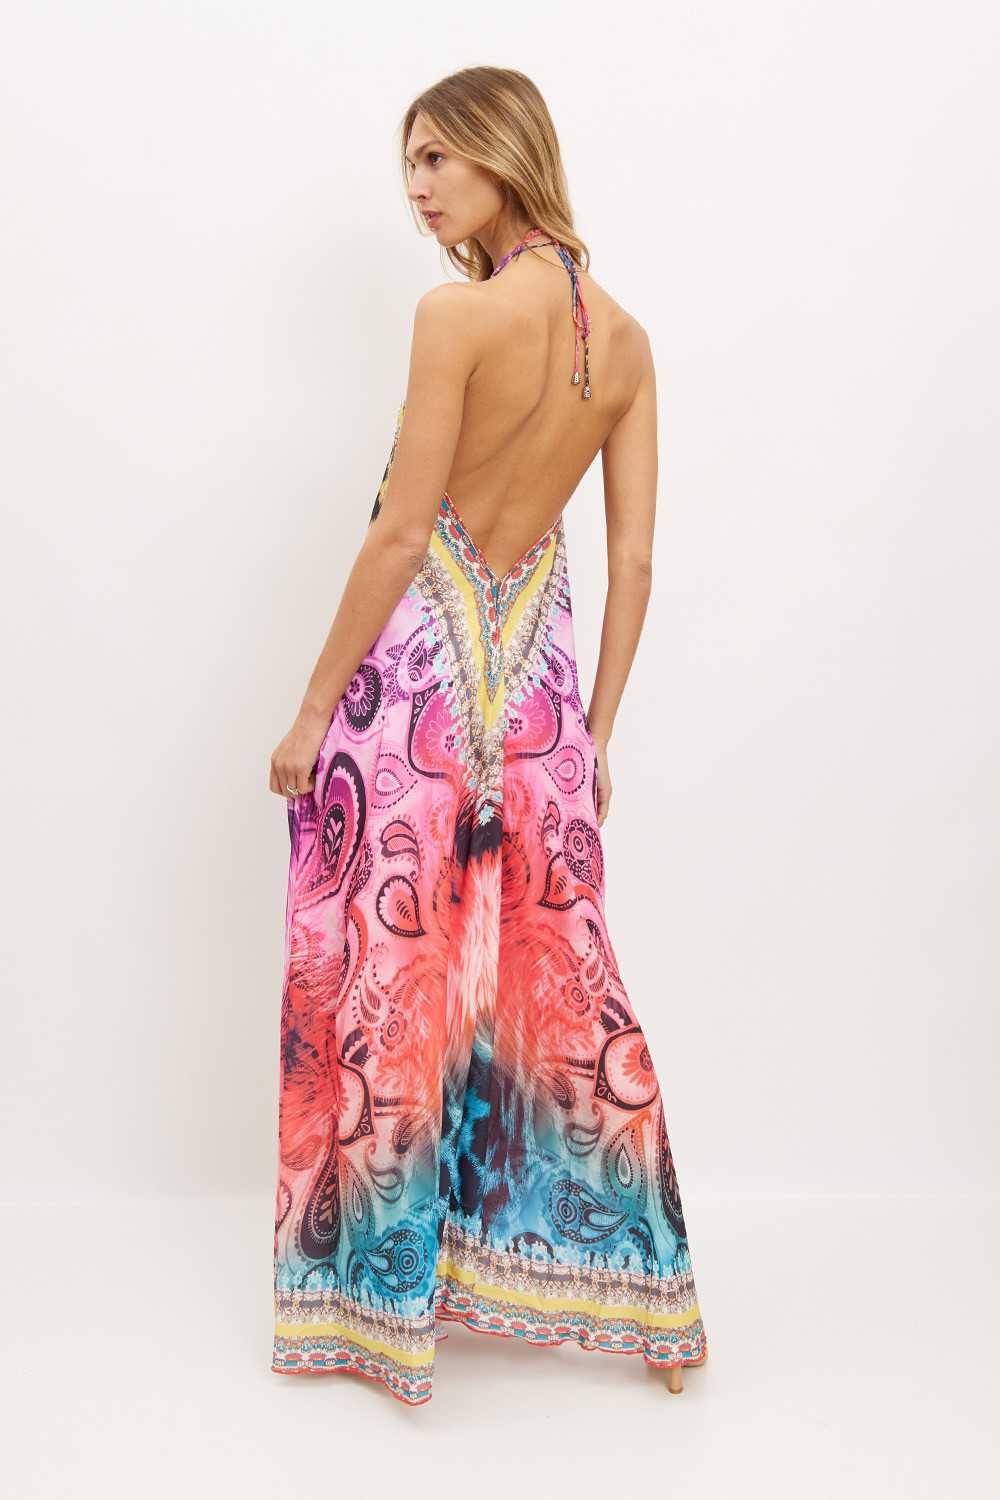 Włoska wakacyjna plażowa sukienka długa panterka boho kwiaty safari XL